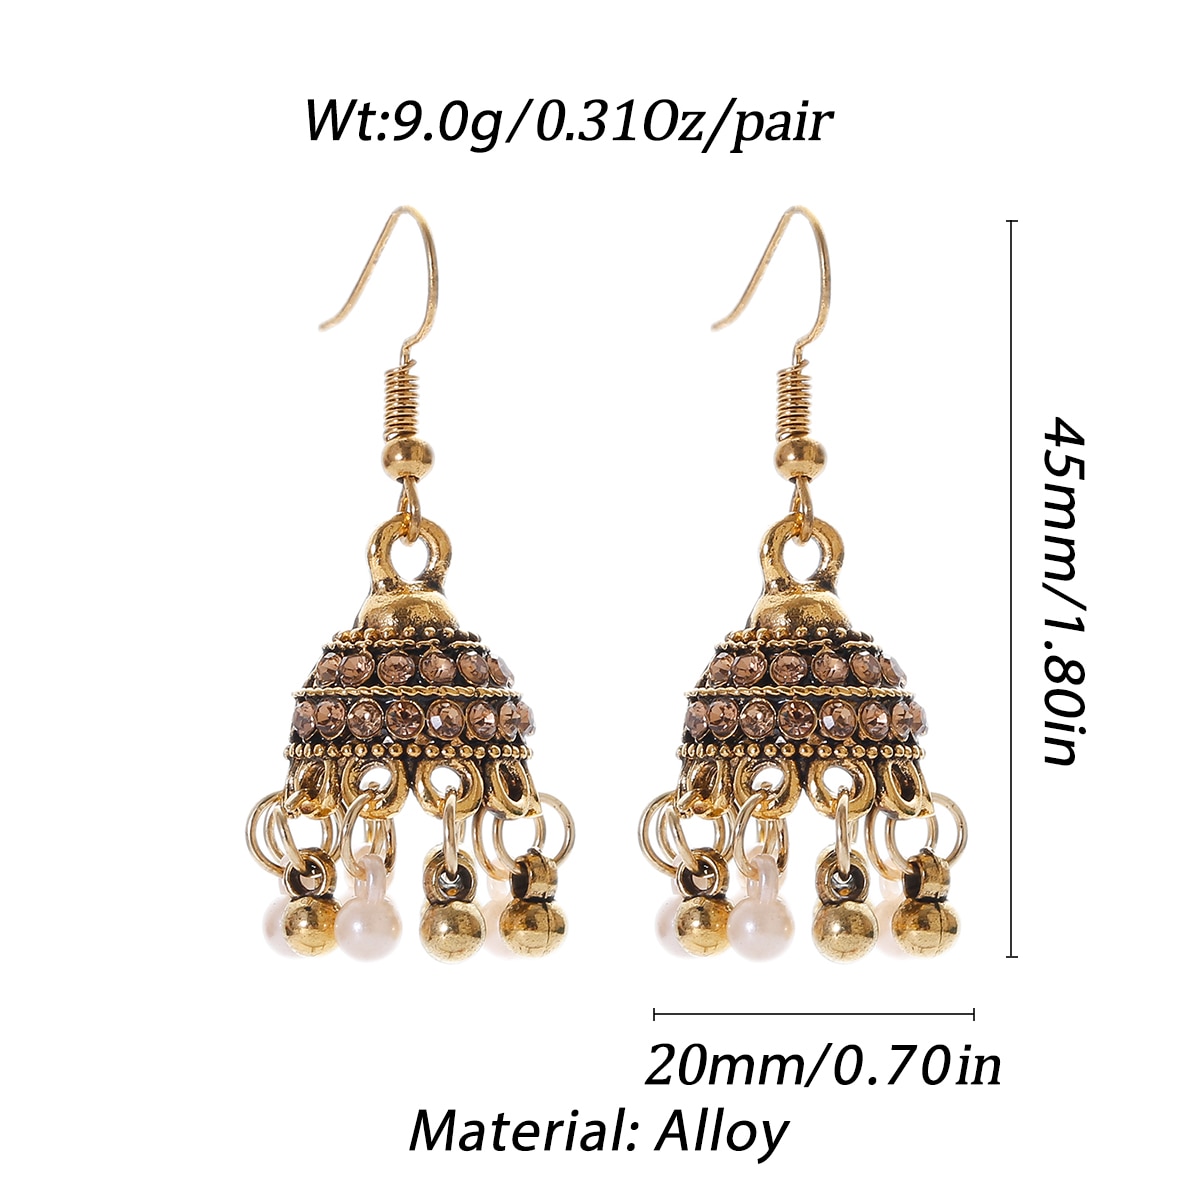 Retro-Classic-Small-Bell-CZ-Earrings-Women39s-Ethnic-Pearl-Tassel-Earrings-Piercing-Wedding-Jewelry--3256804108684137-7